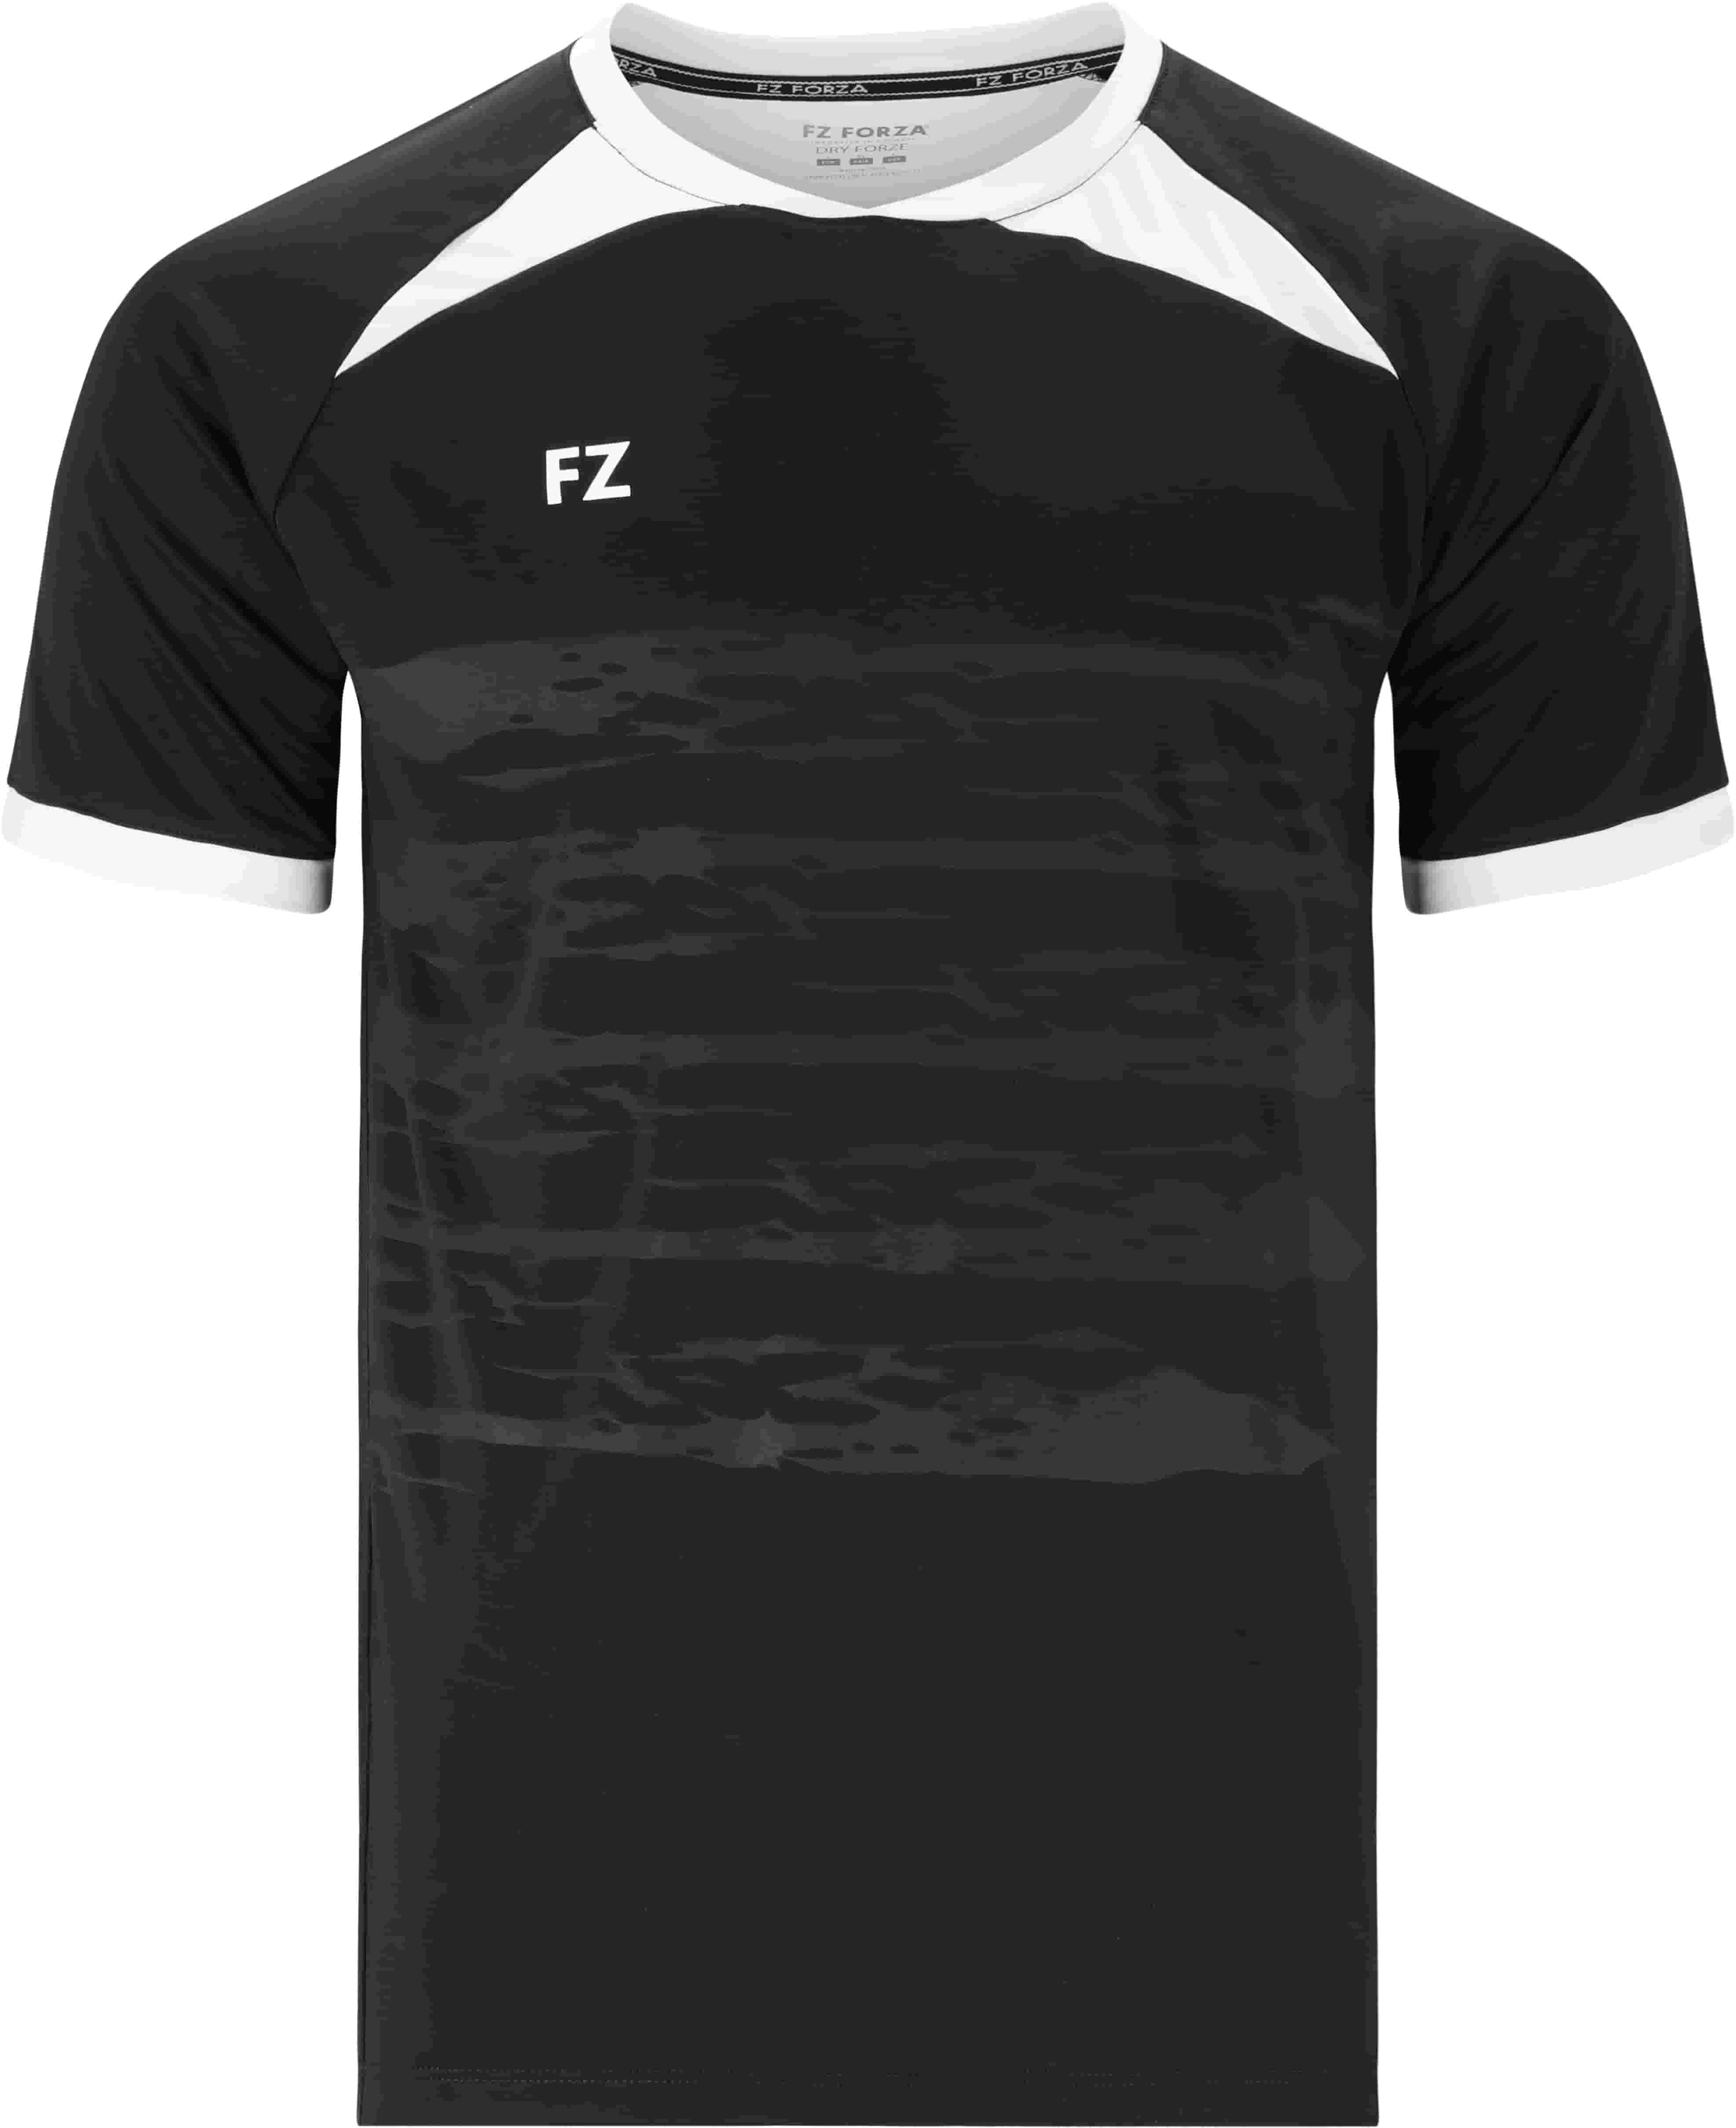 FZ FORZA Agentin M T-Shirt - Schwarz M